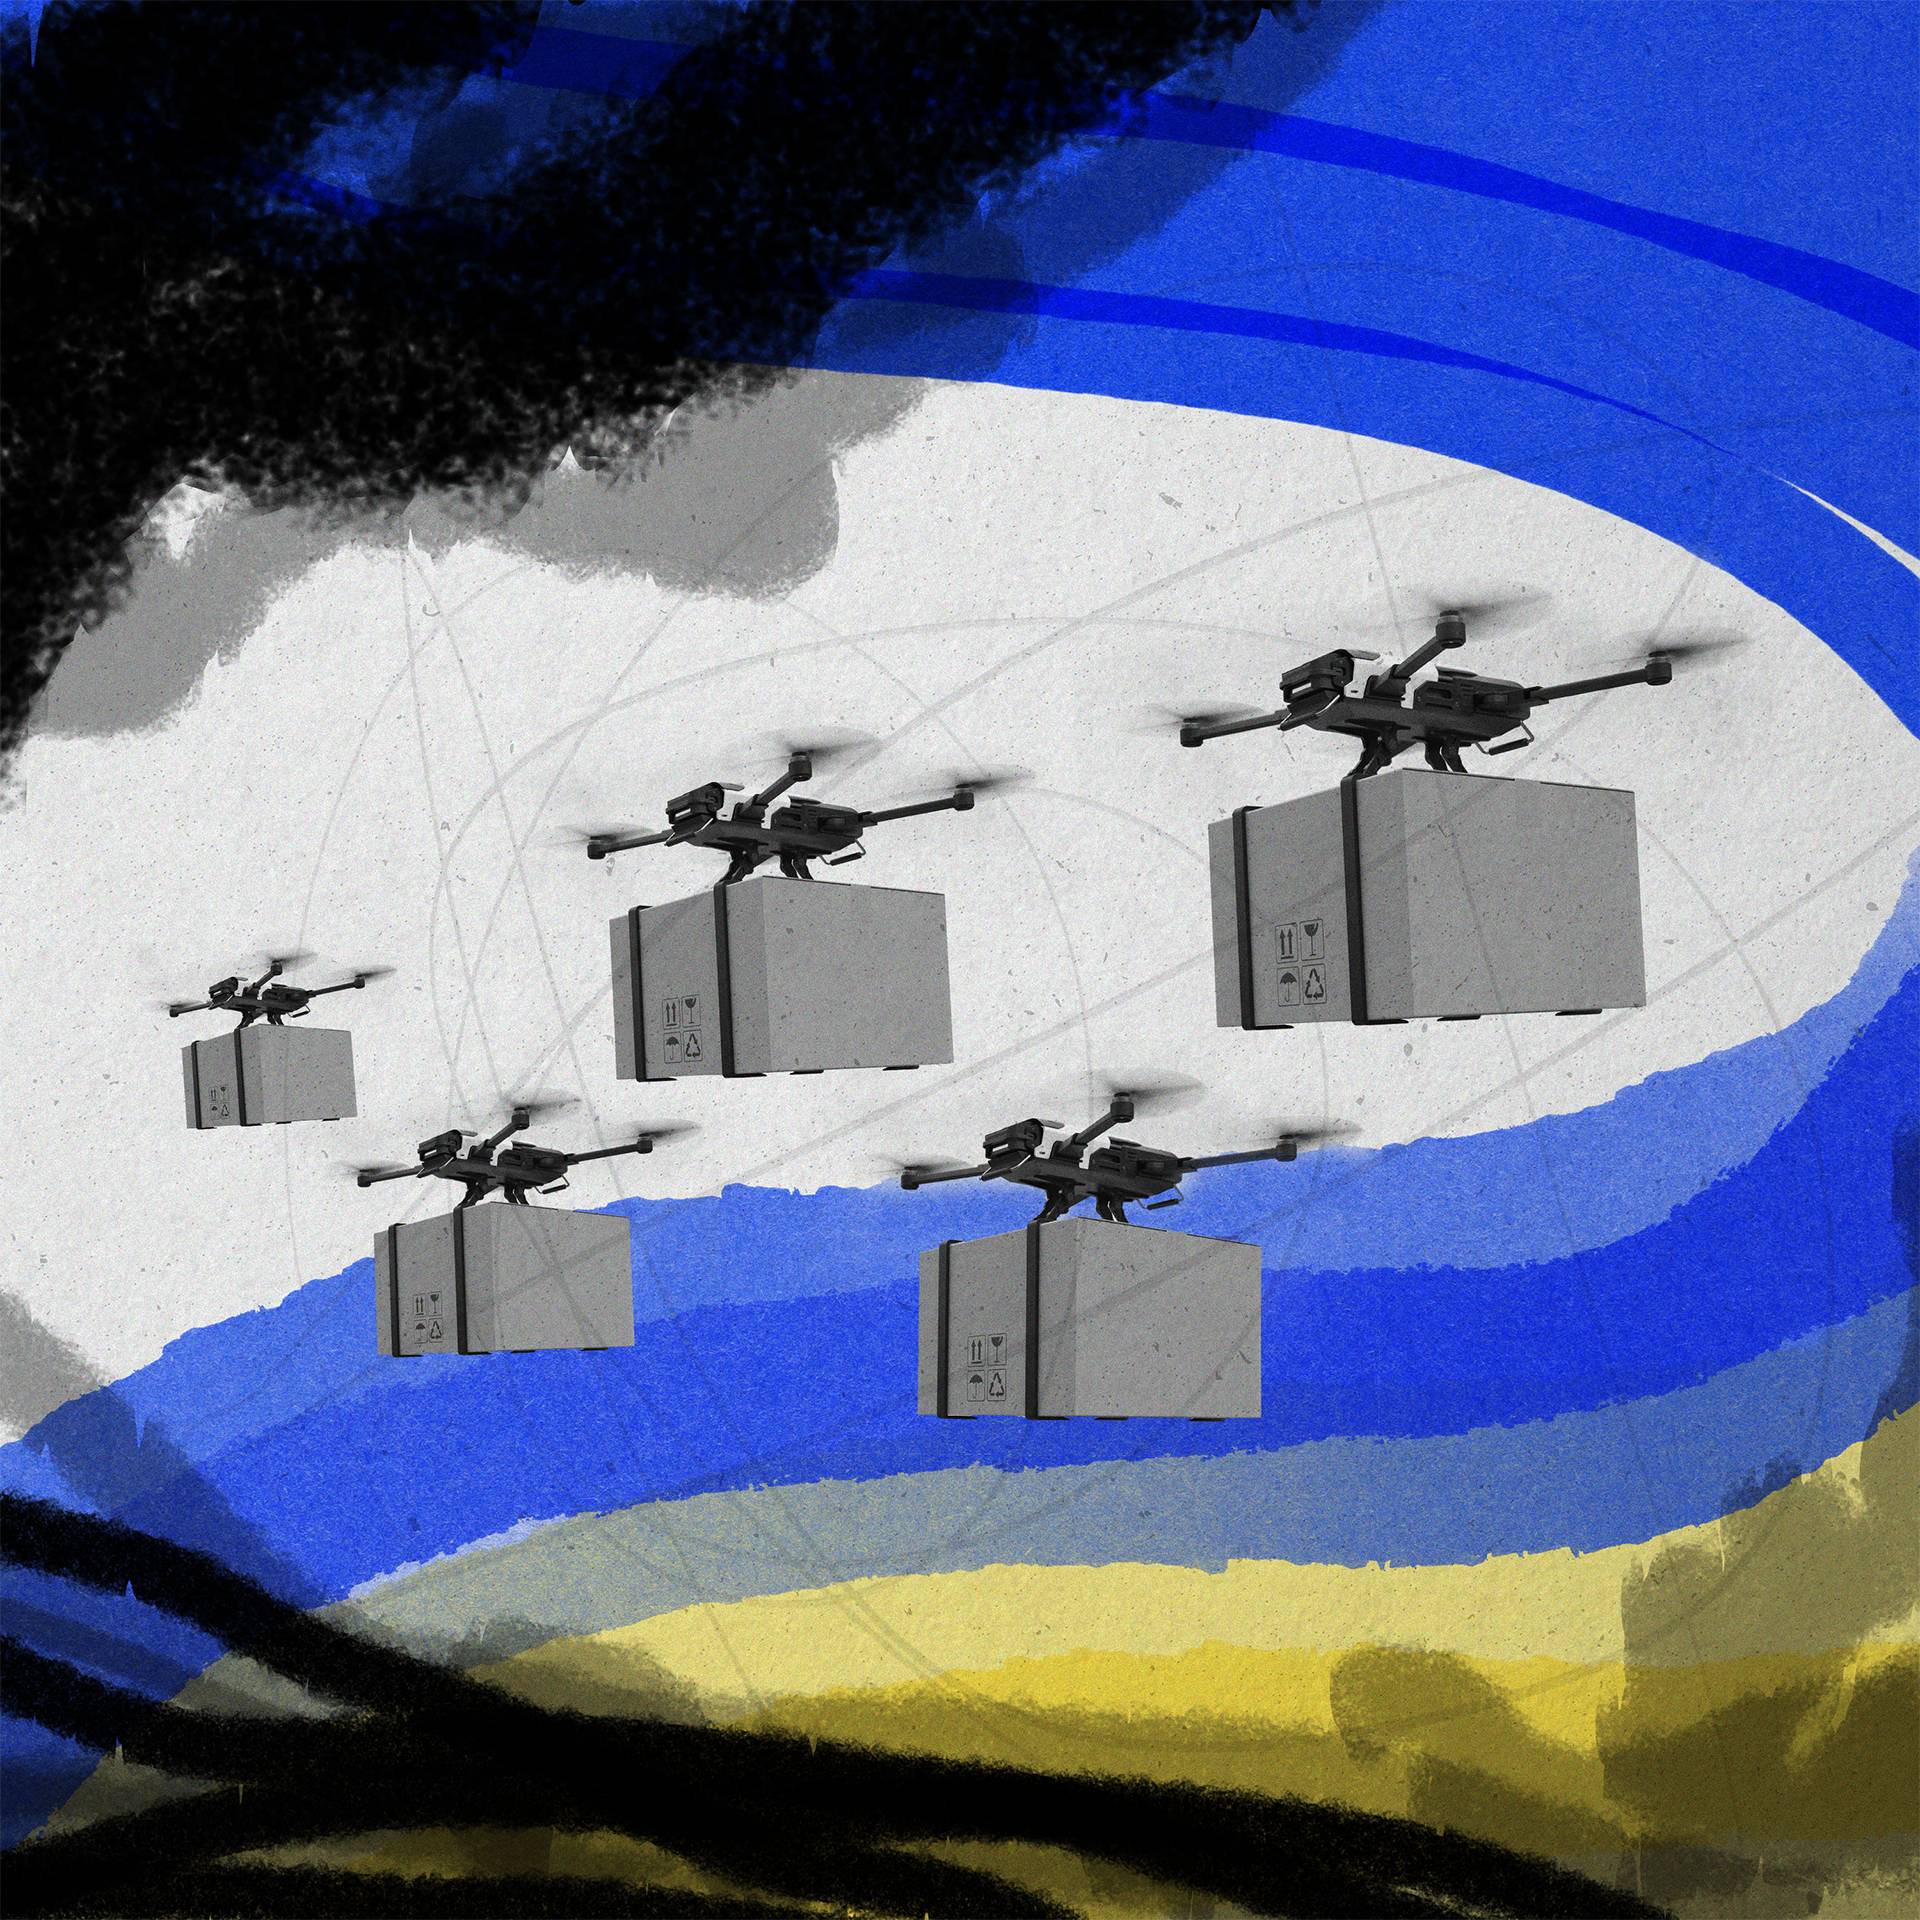 Ilustracja przedstawiająca drony lecące z podczepionymi paczkami